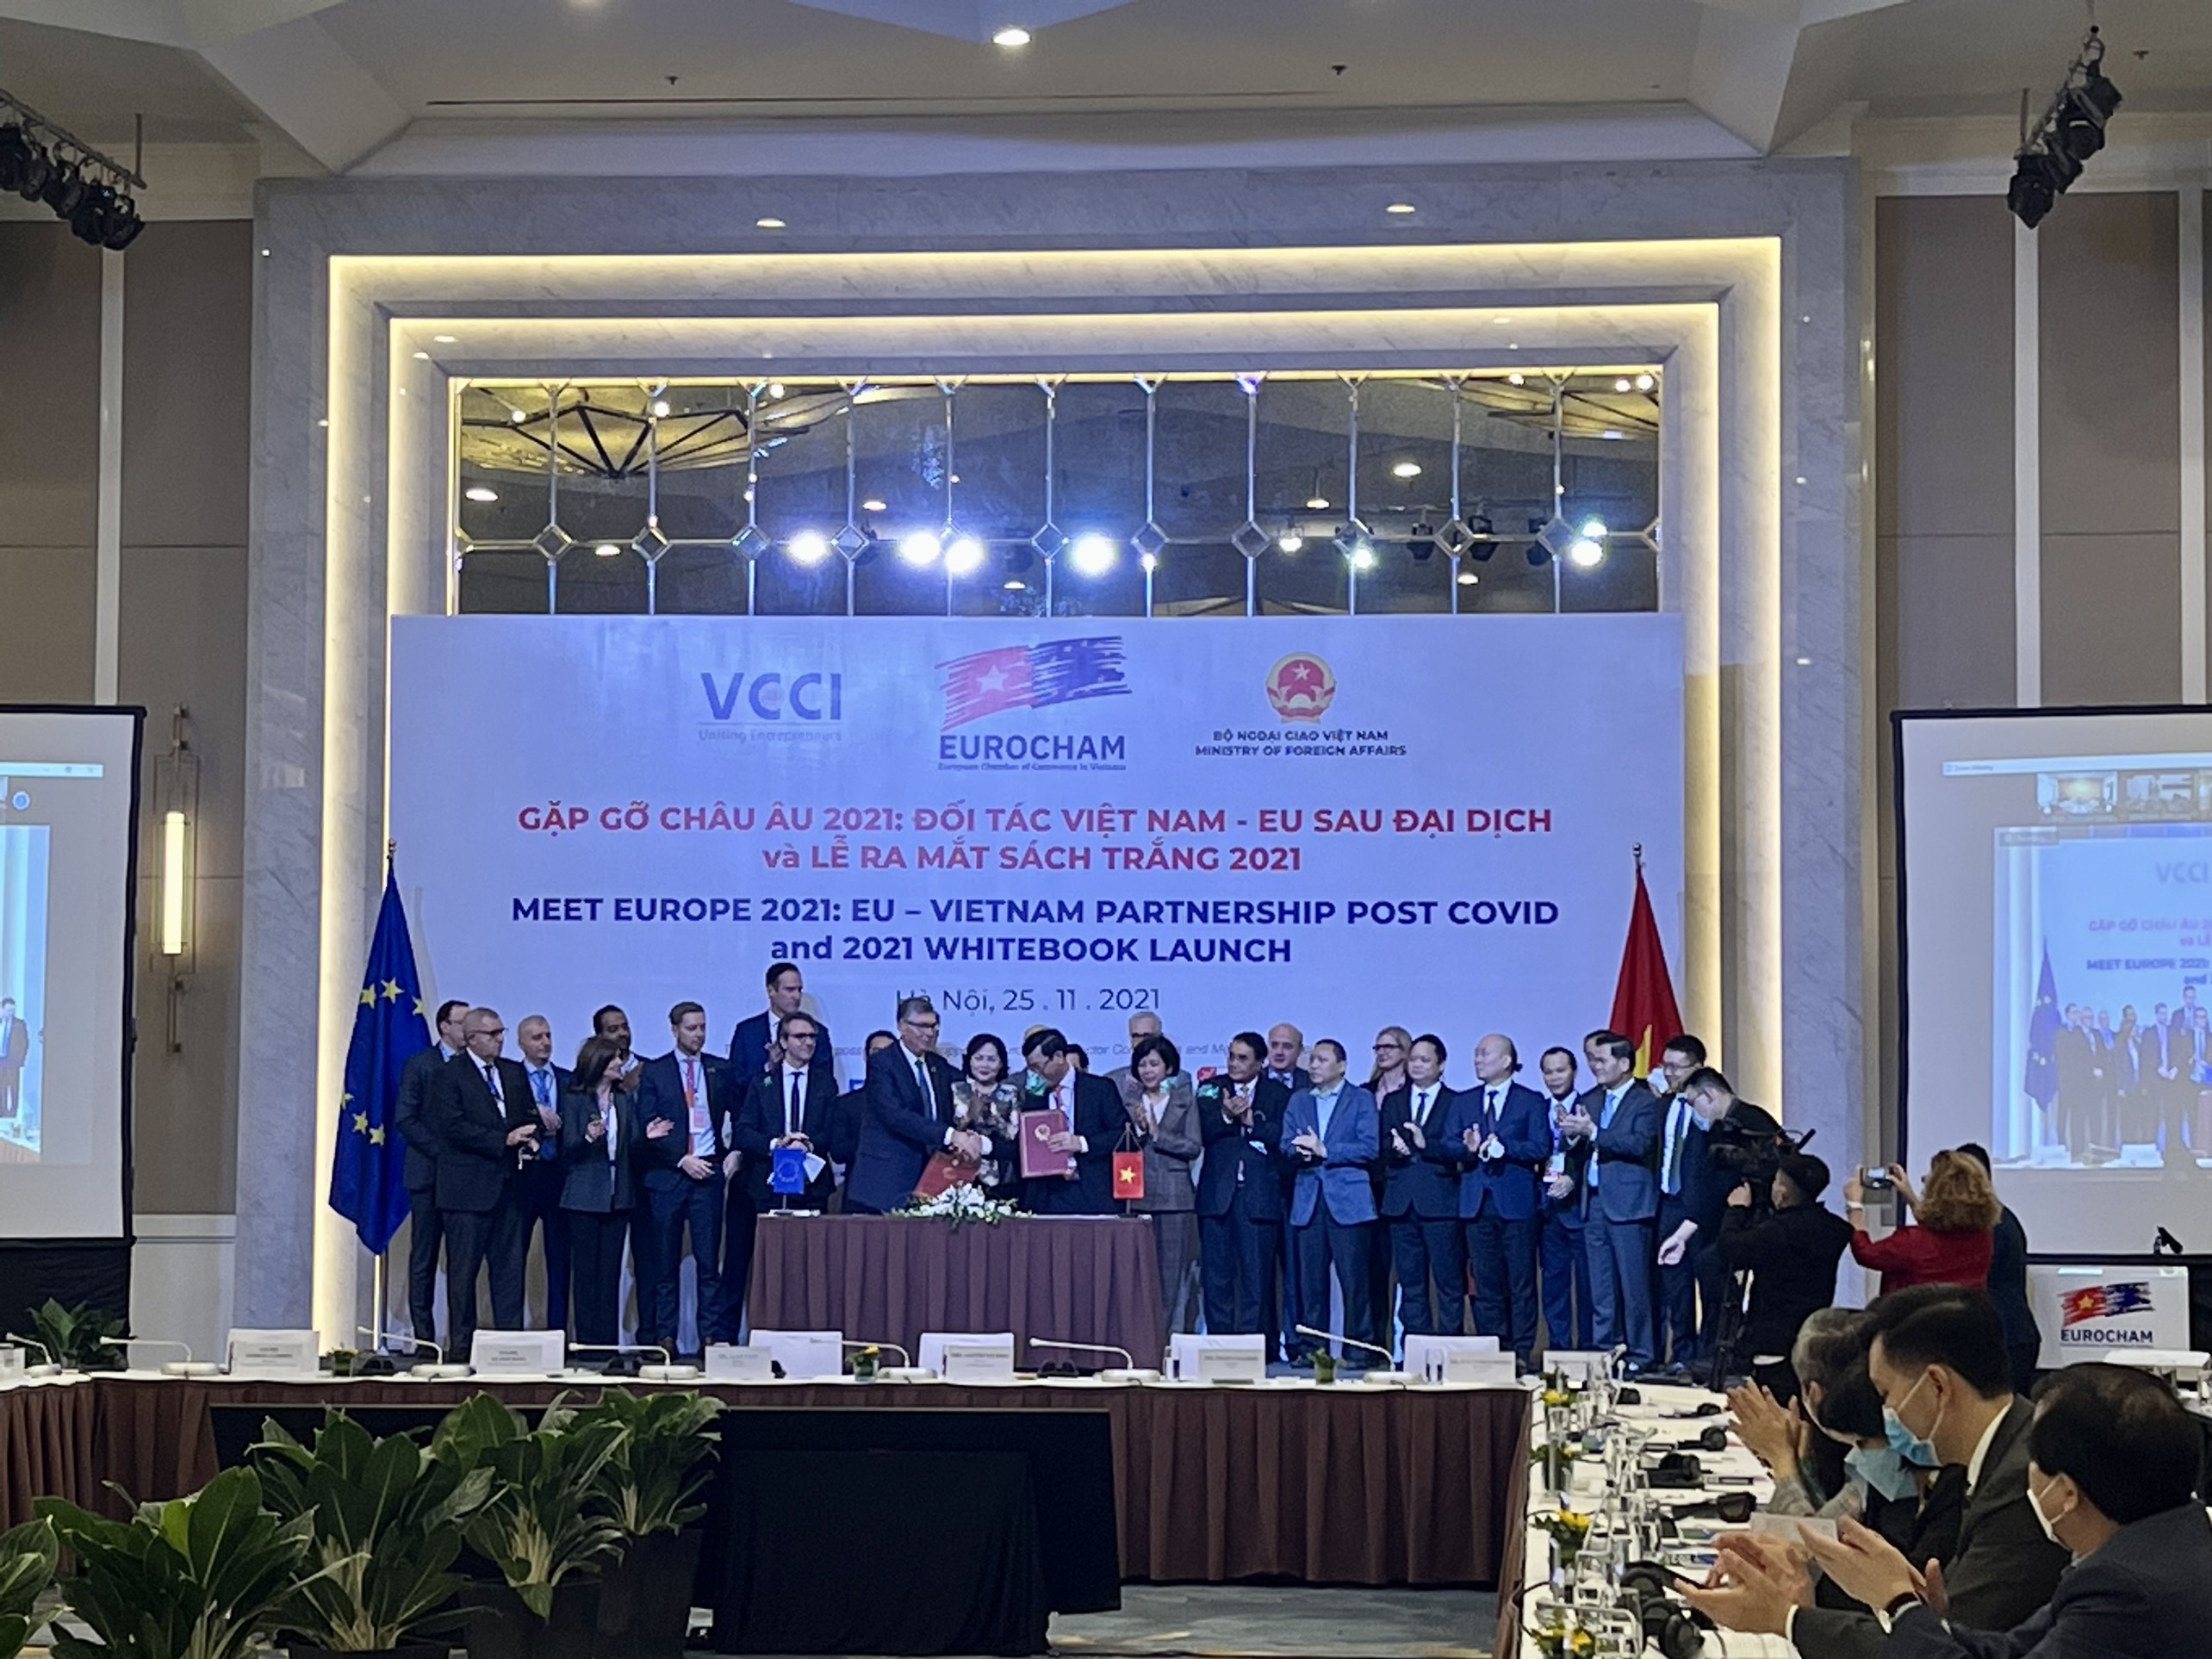 Bắc Giang: Tham dự Hội nghị Gặp gỡ châu Âu năm 2021